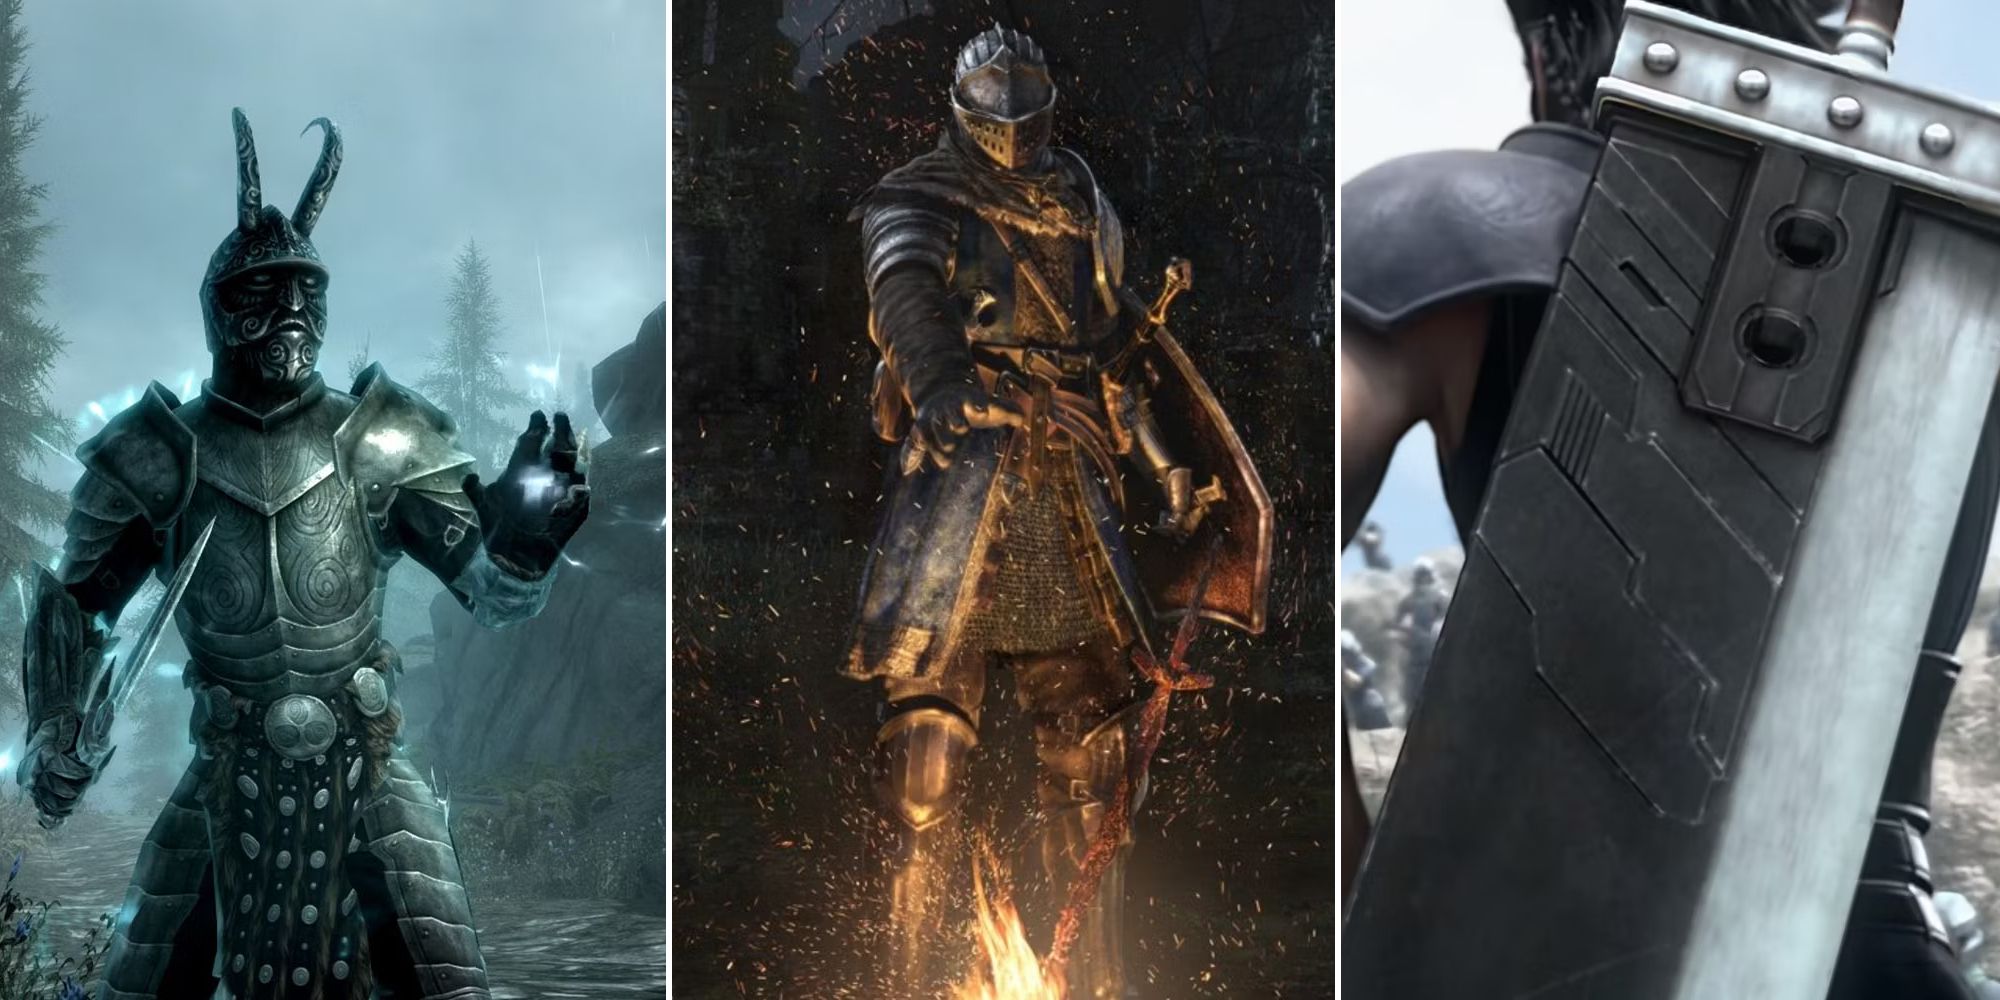 Skyrim, Dark Souls, and Final Fantasy Split Image